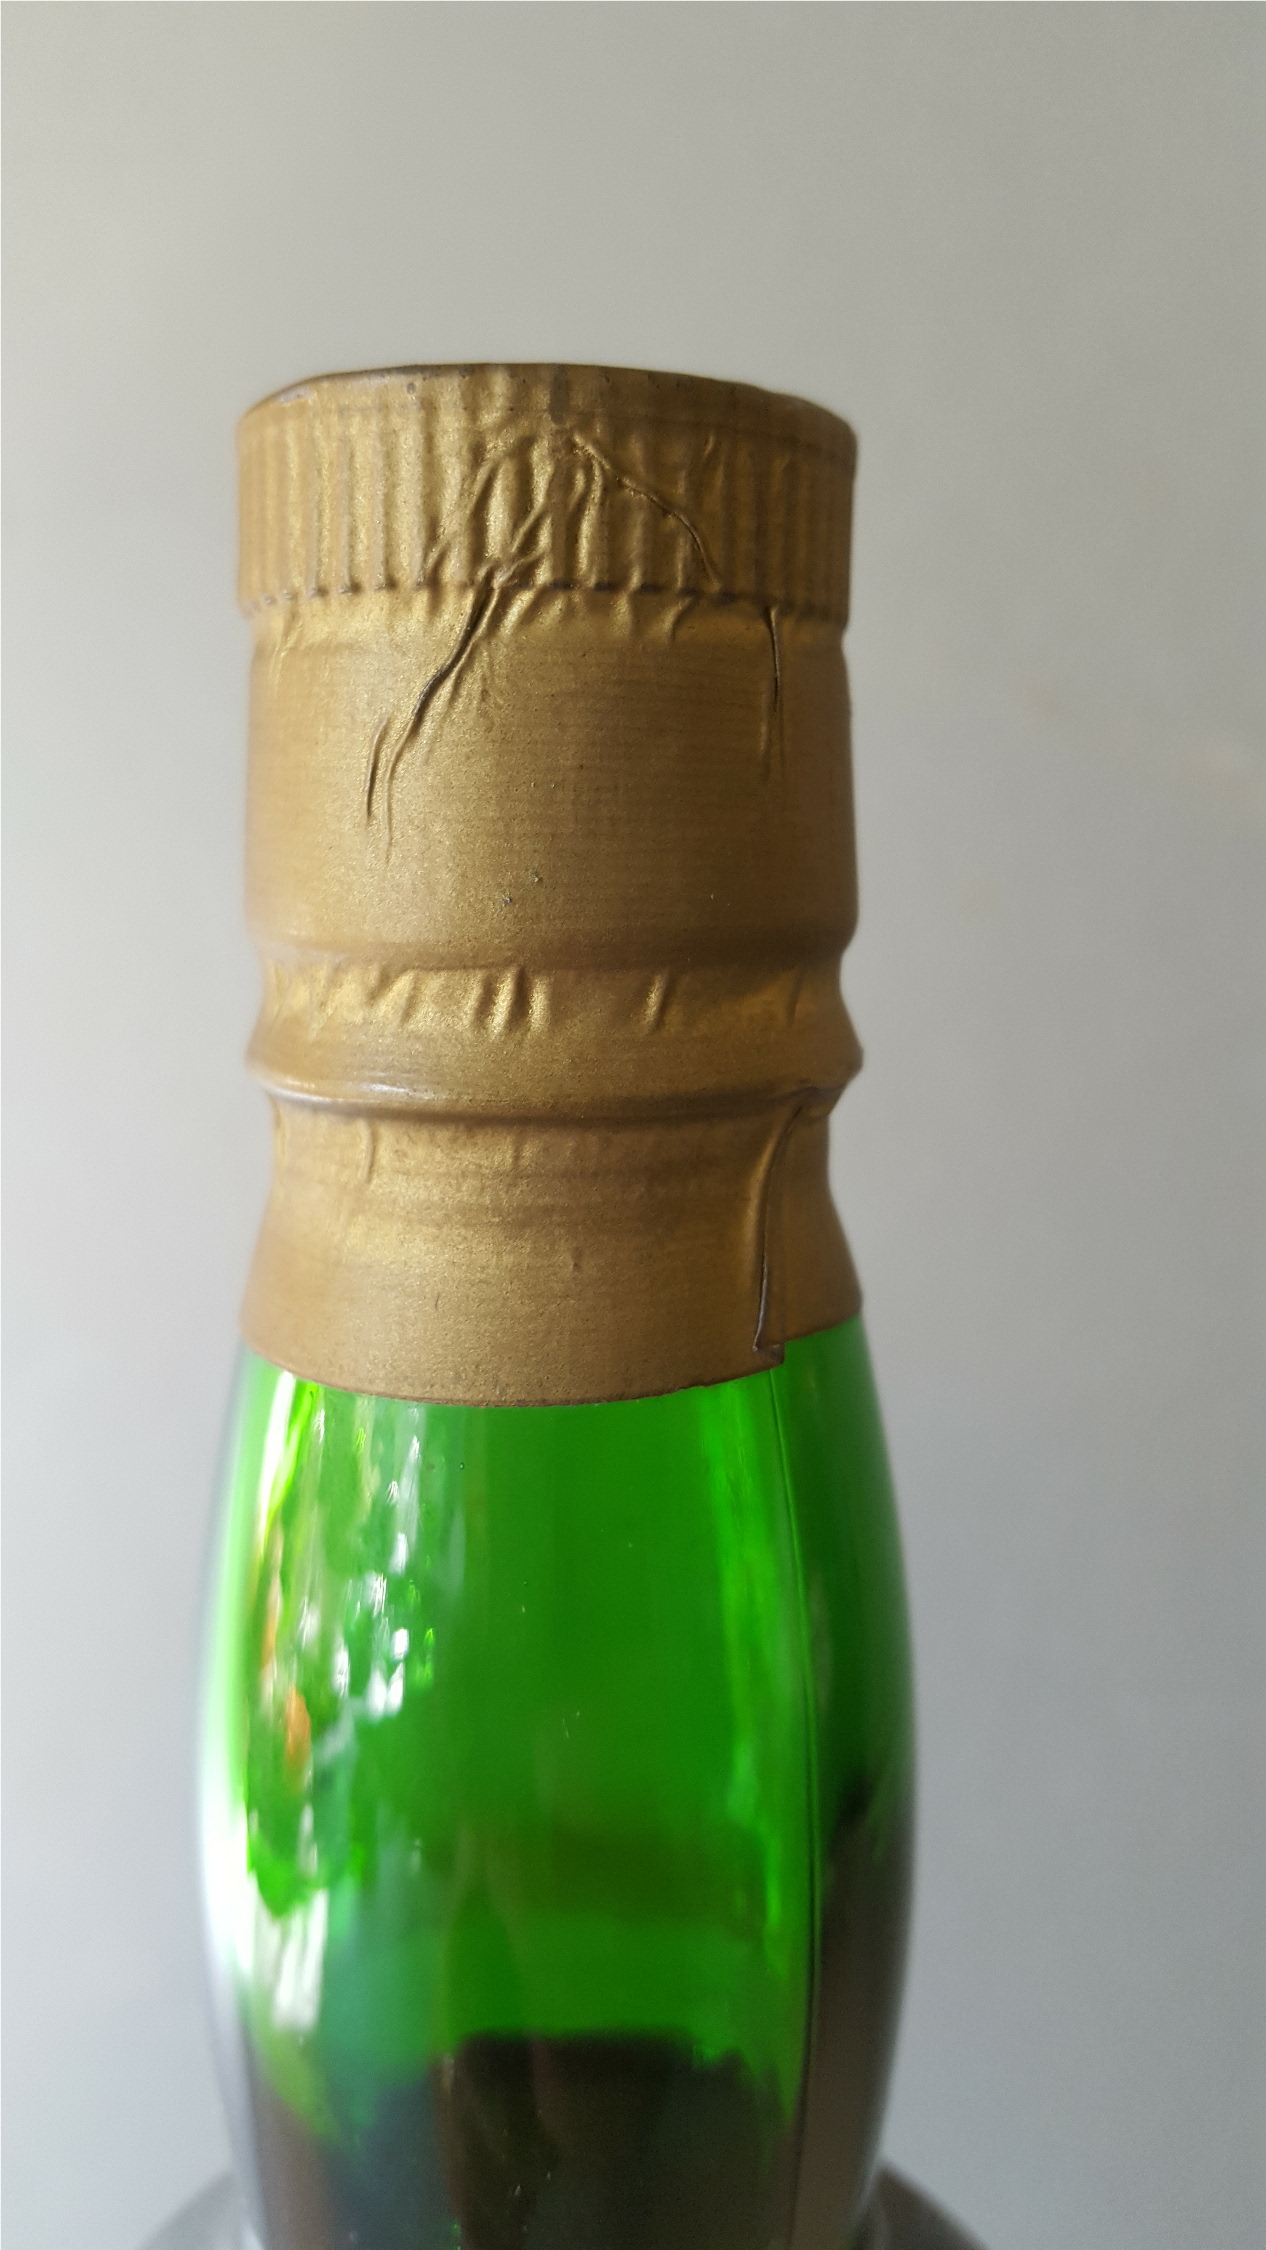 1 x 70cl Bottle Vintage Peers Reserve Finest Old Vintage Character Port - Image 2 of 4